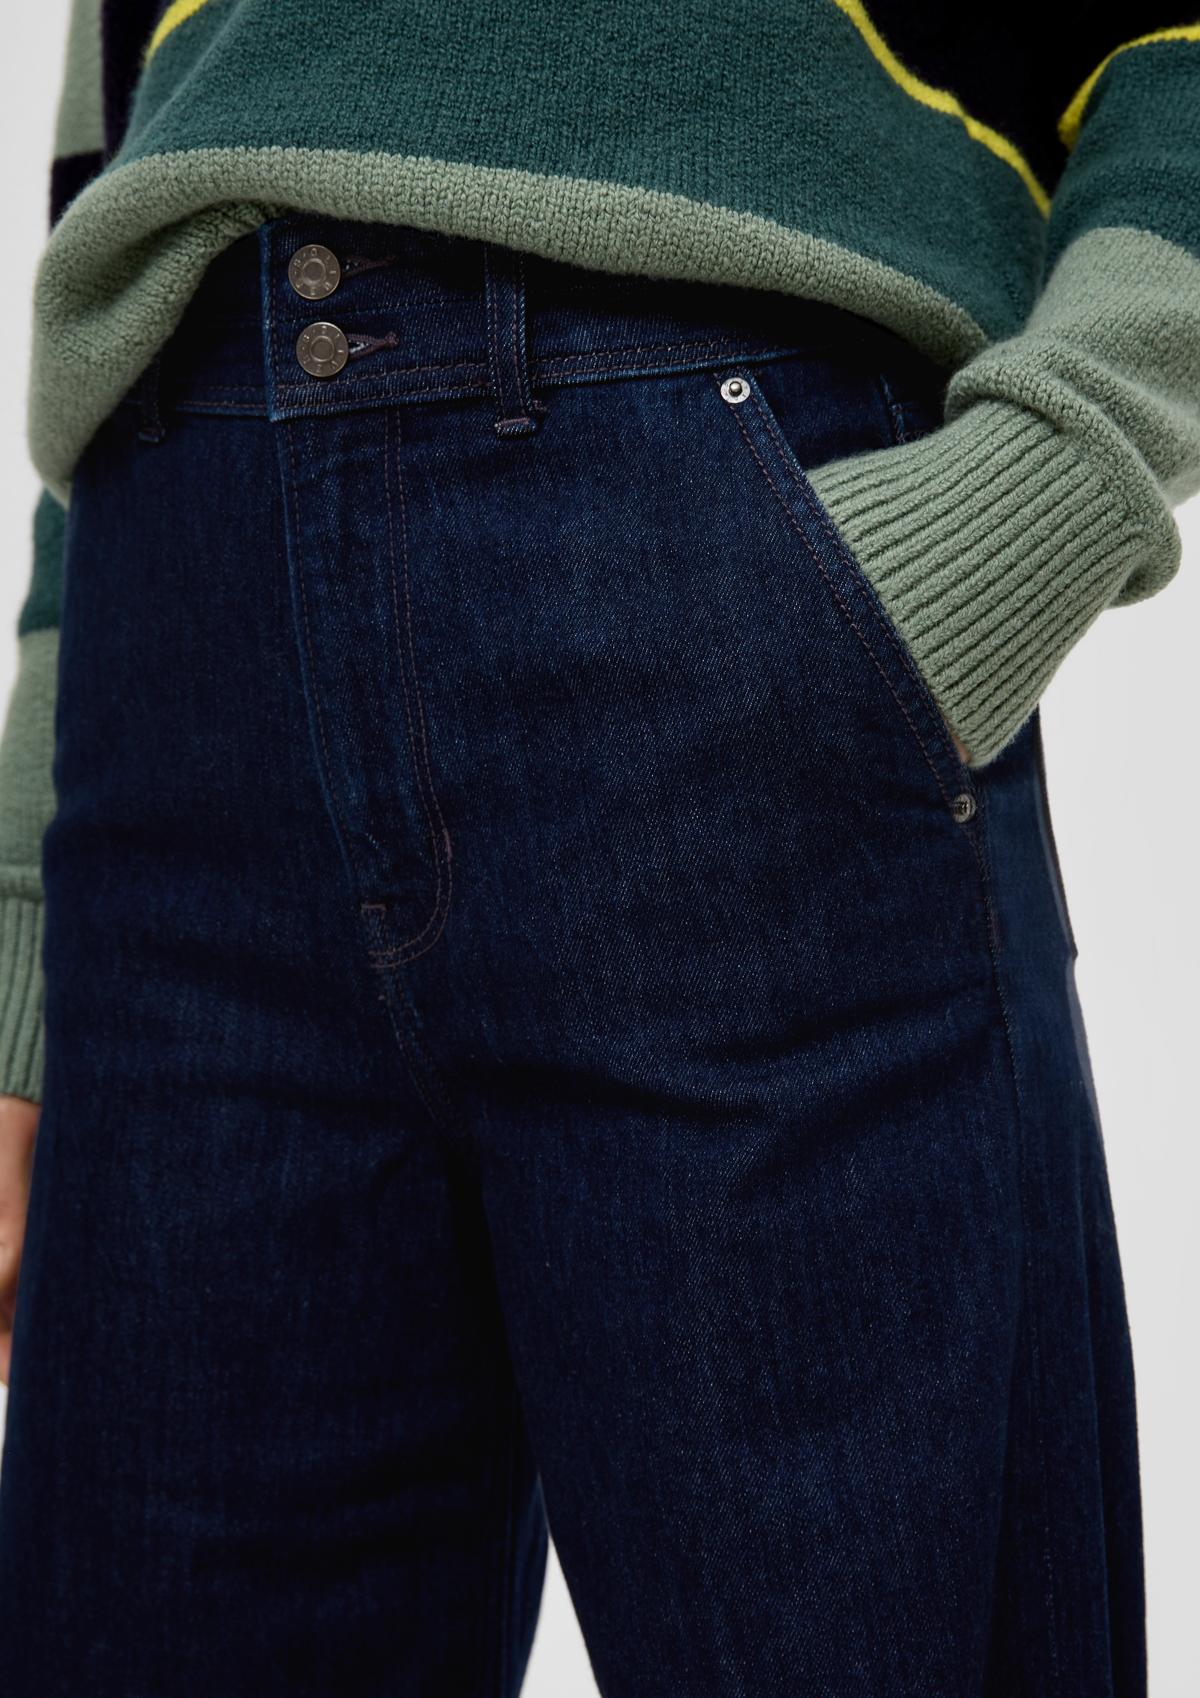 s.Oliver Suri jeans / regular fit / high rise / wide leg